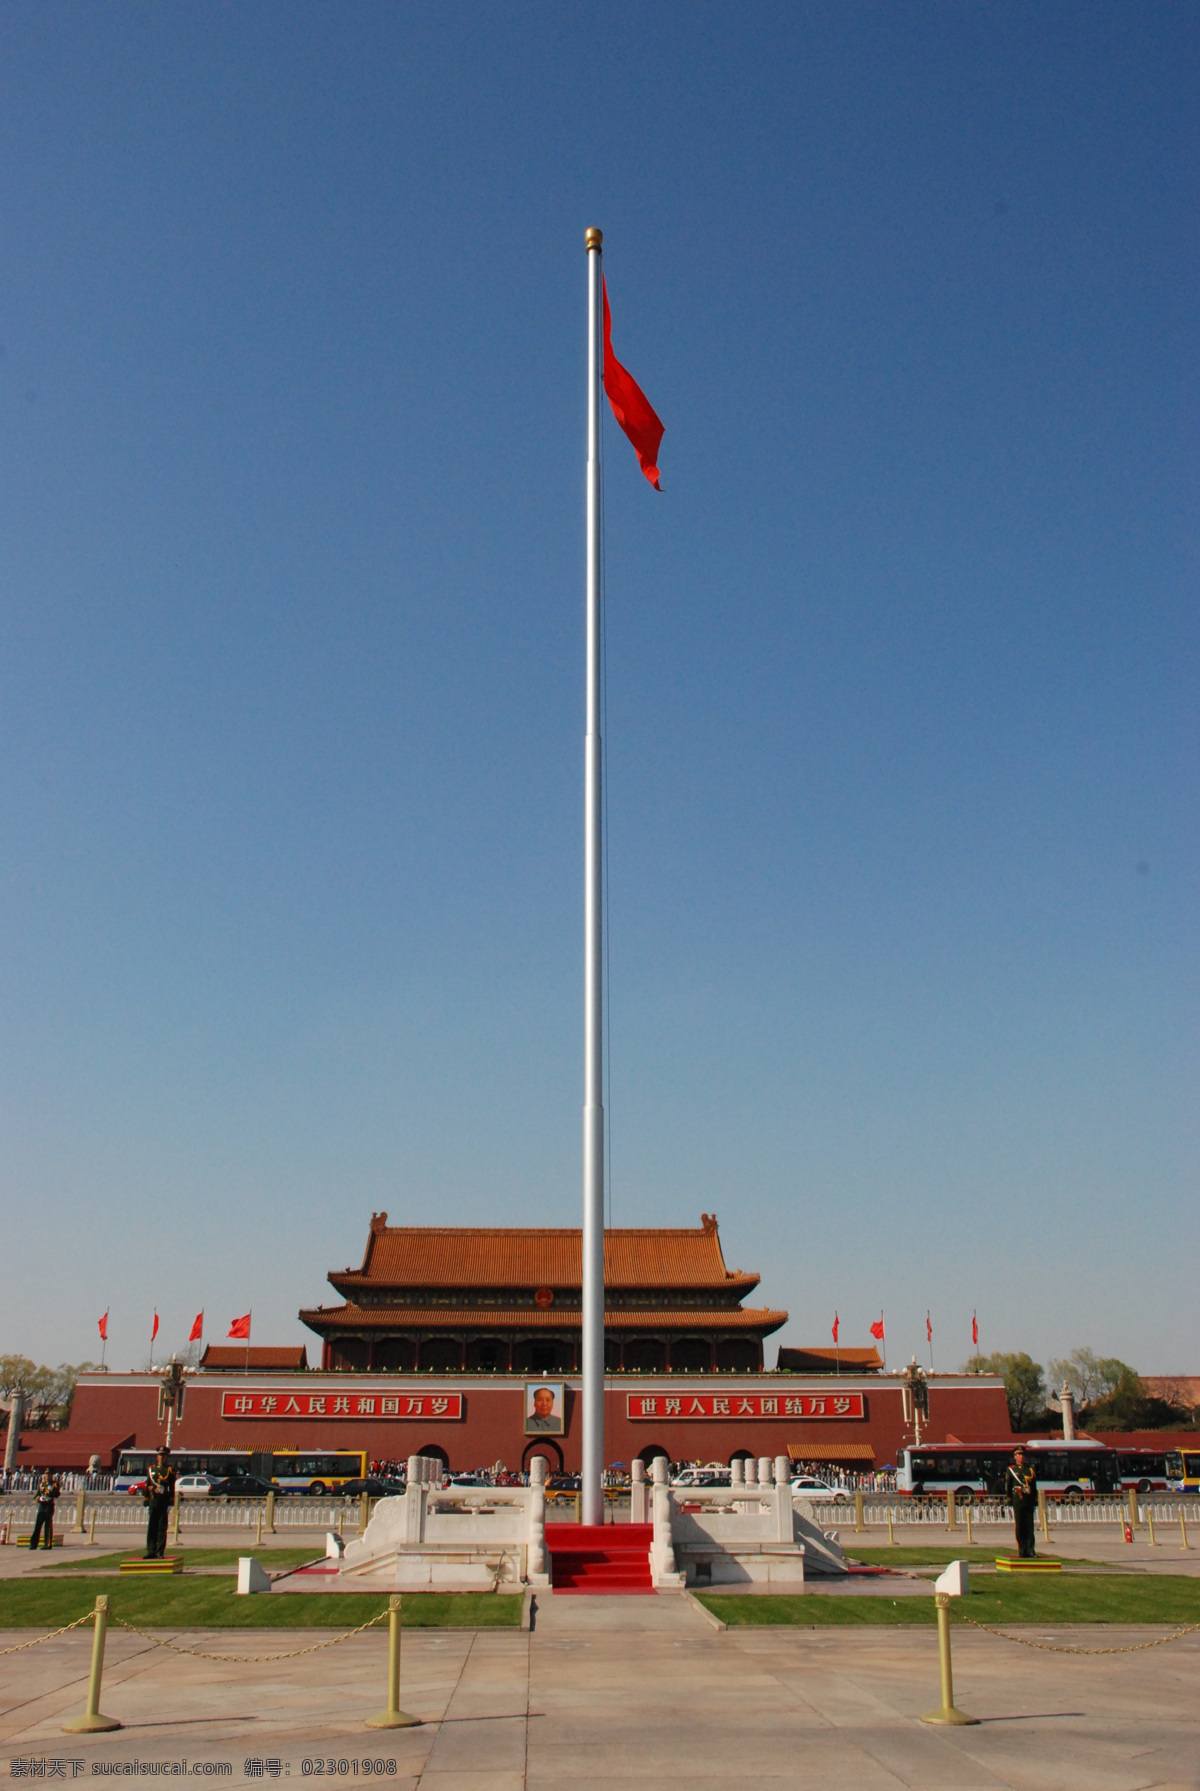 我爱 北京 天安门 红旗 五星红旗 城楼 武警 旗杆 建筑 国内旅游 旅游摄影